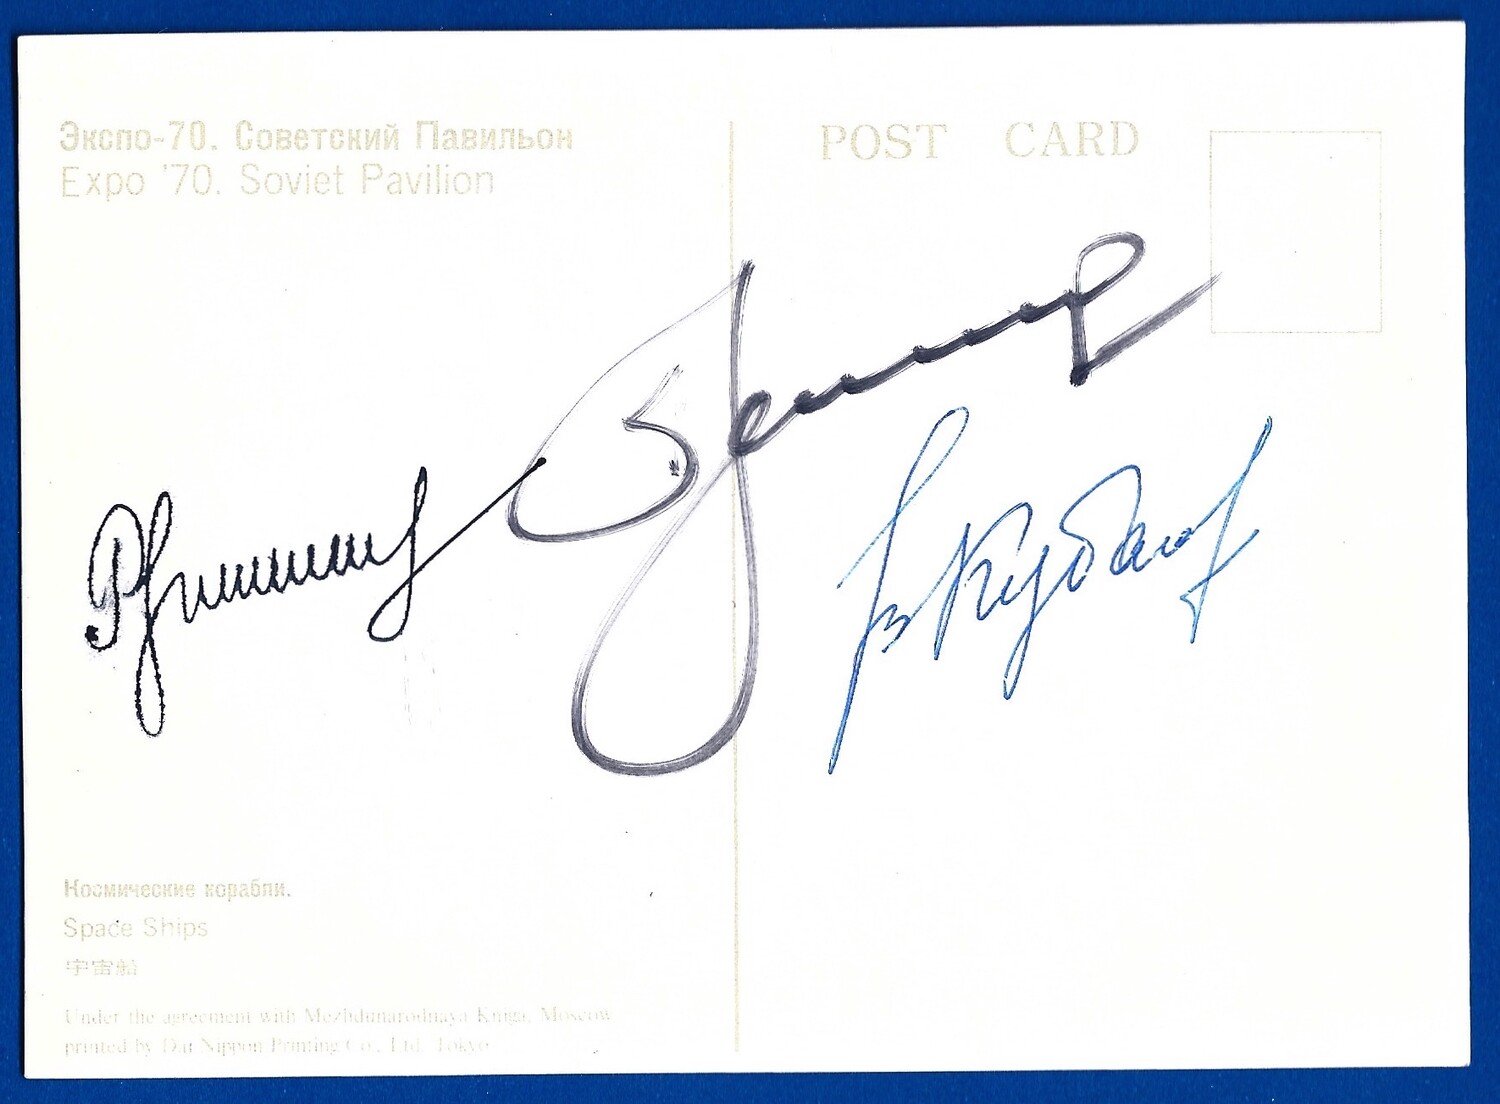 N. Rukavishnikov, A. Leonov, V. Kubasov signed postcard